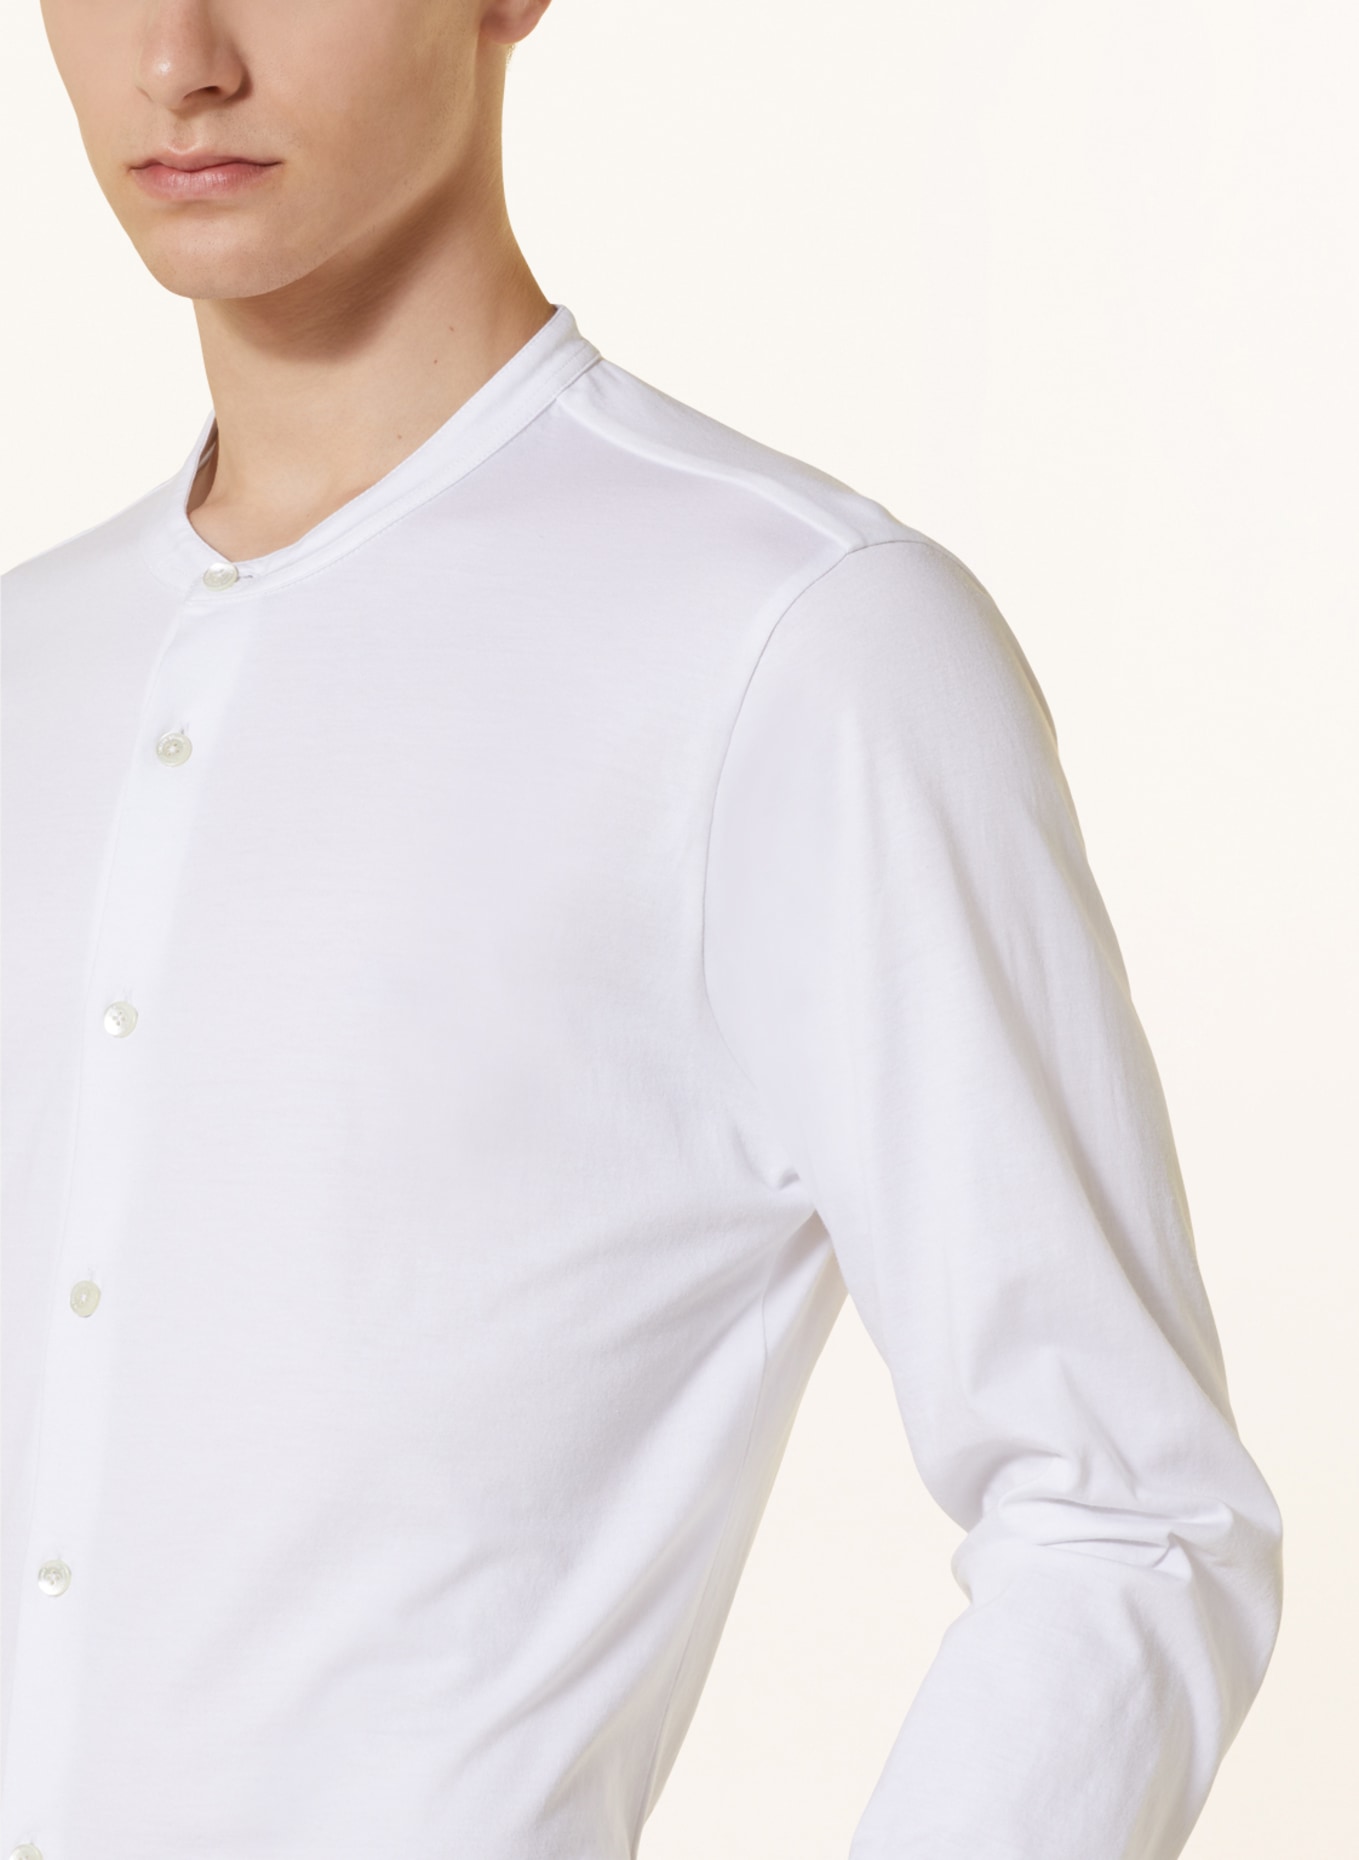 Stefan Brandt Jerseyhemd Slim Fit mit Stehkragen, Farbe: WEISS (Bild 4)